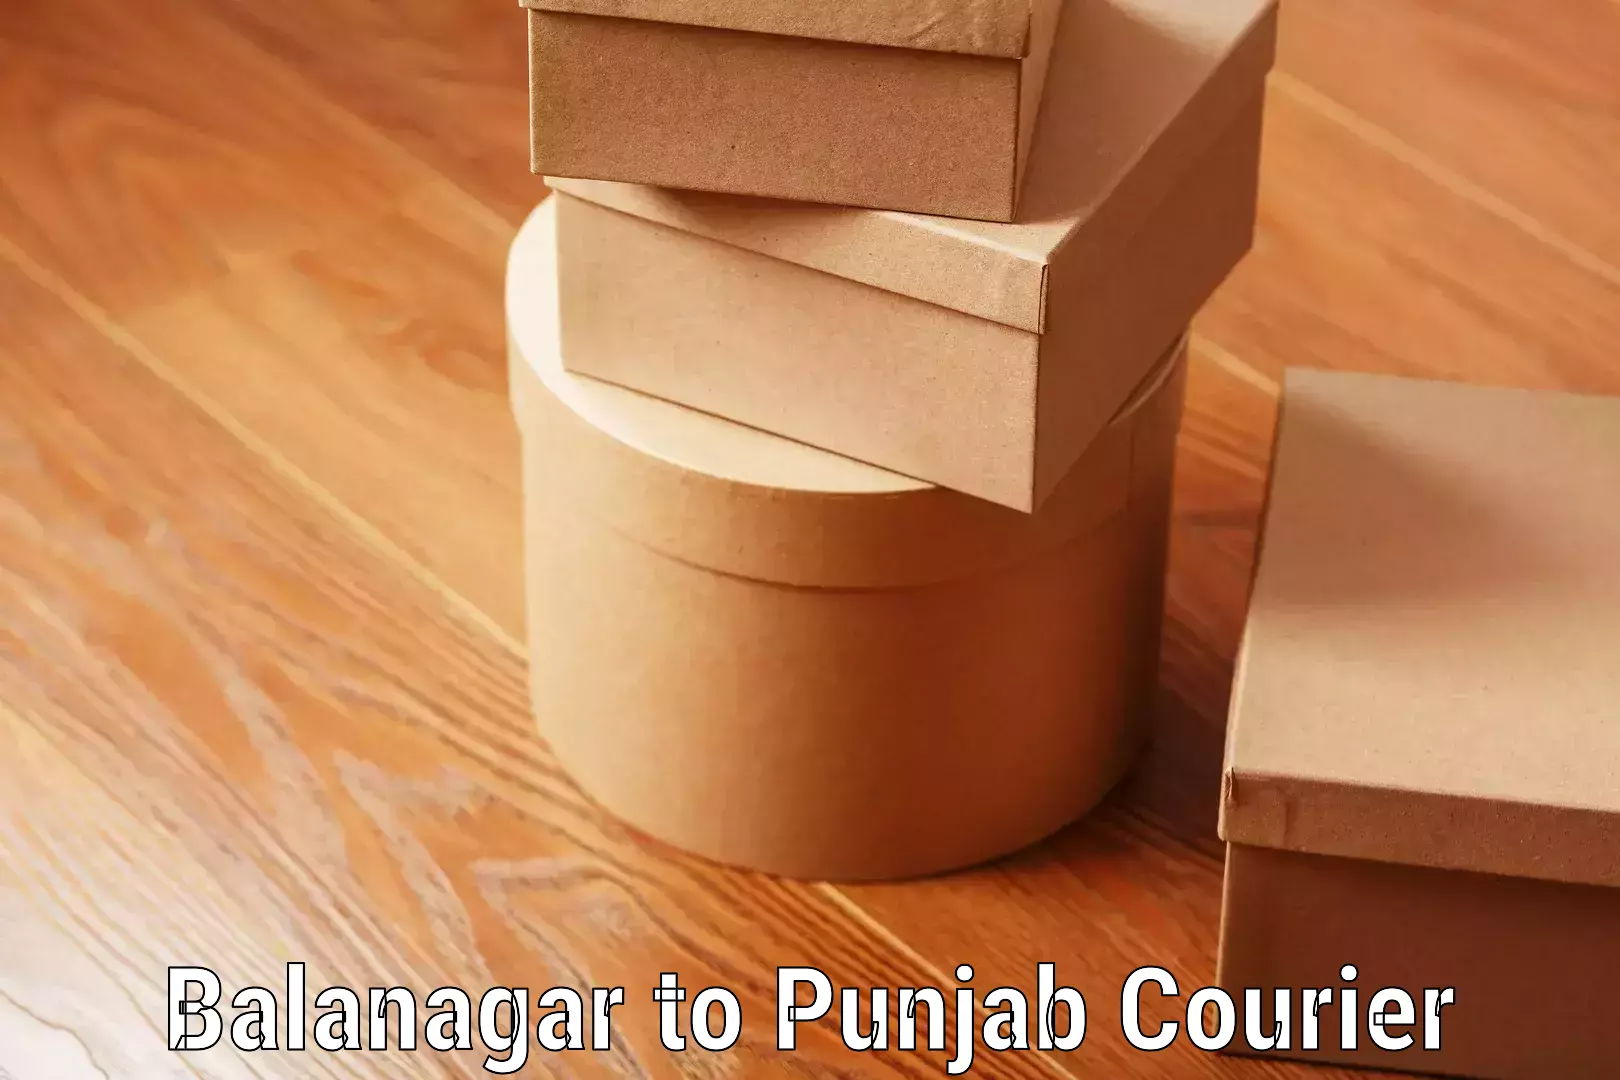 Luggage transport schedule Balanagar to Nangal